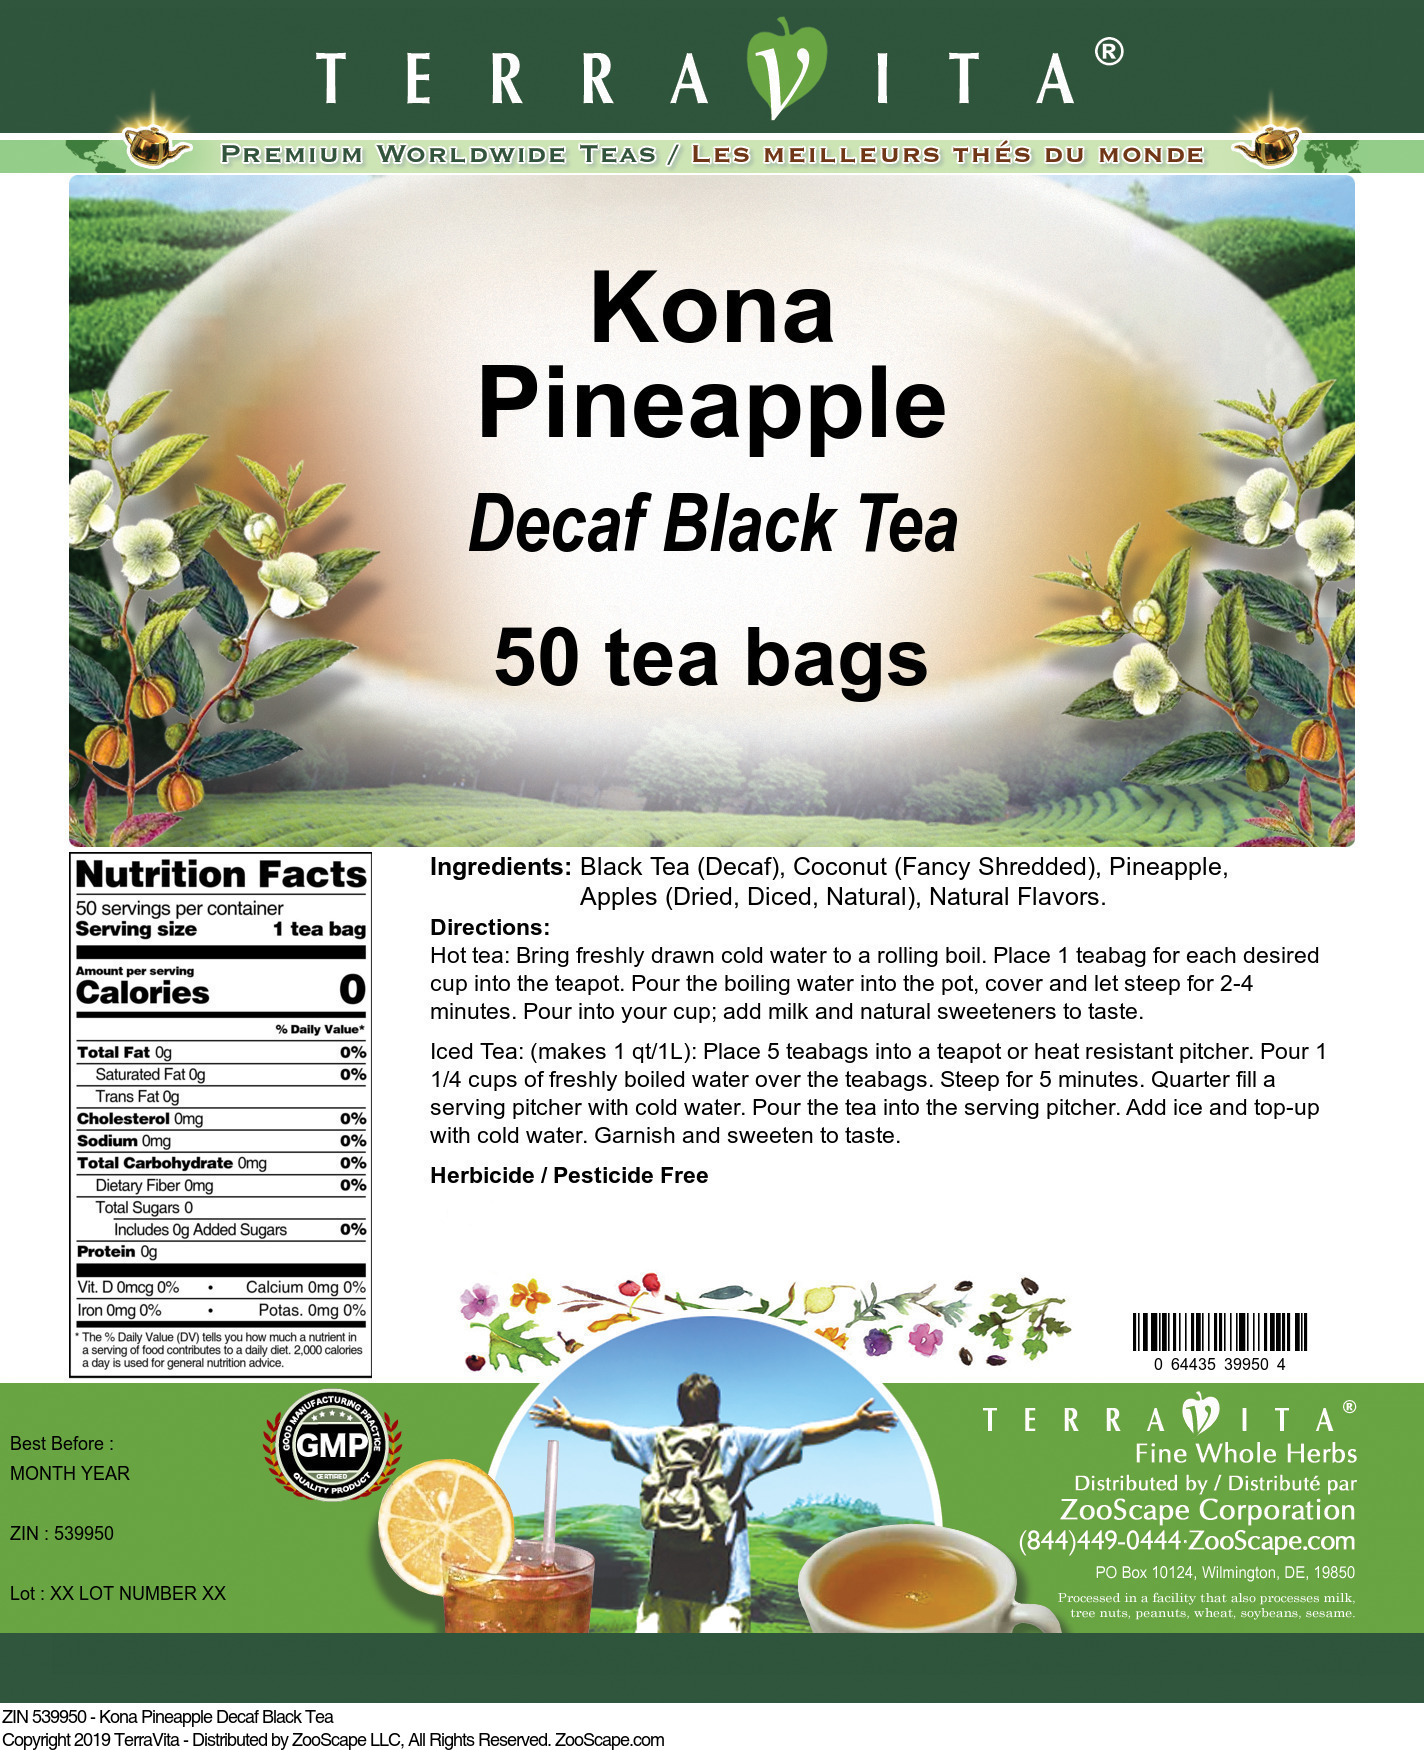 Kona Pineapple Decaf Black Tea - Label